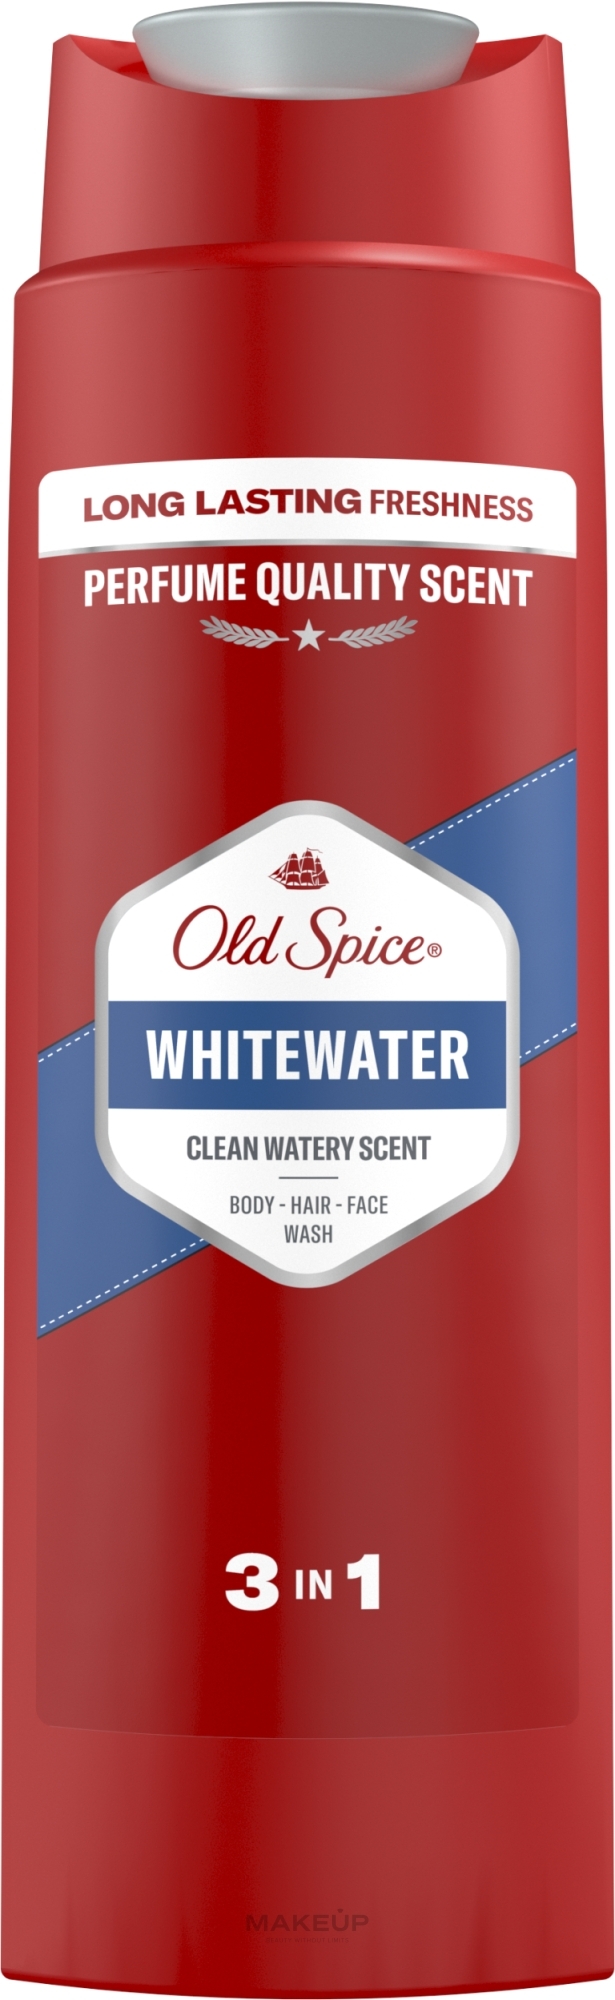 Żel pod prysznic dla mężczyzn - Old Spice Whitewater 3 In 1 Body-Hair-Face Wash — Zdjęcie 250 ml